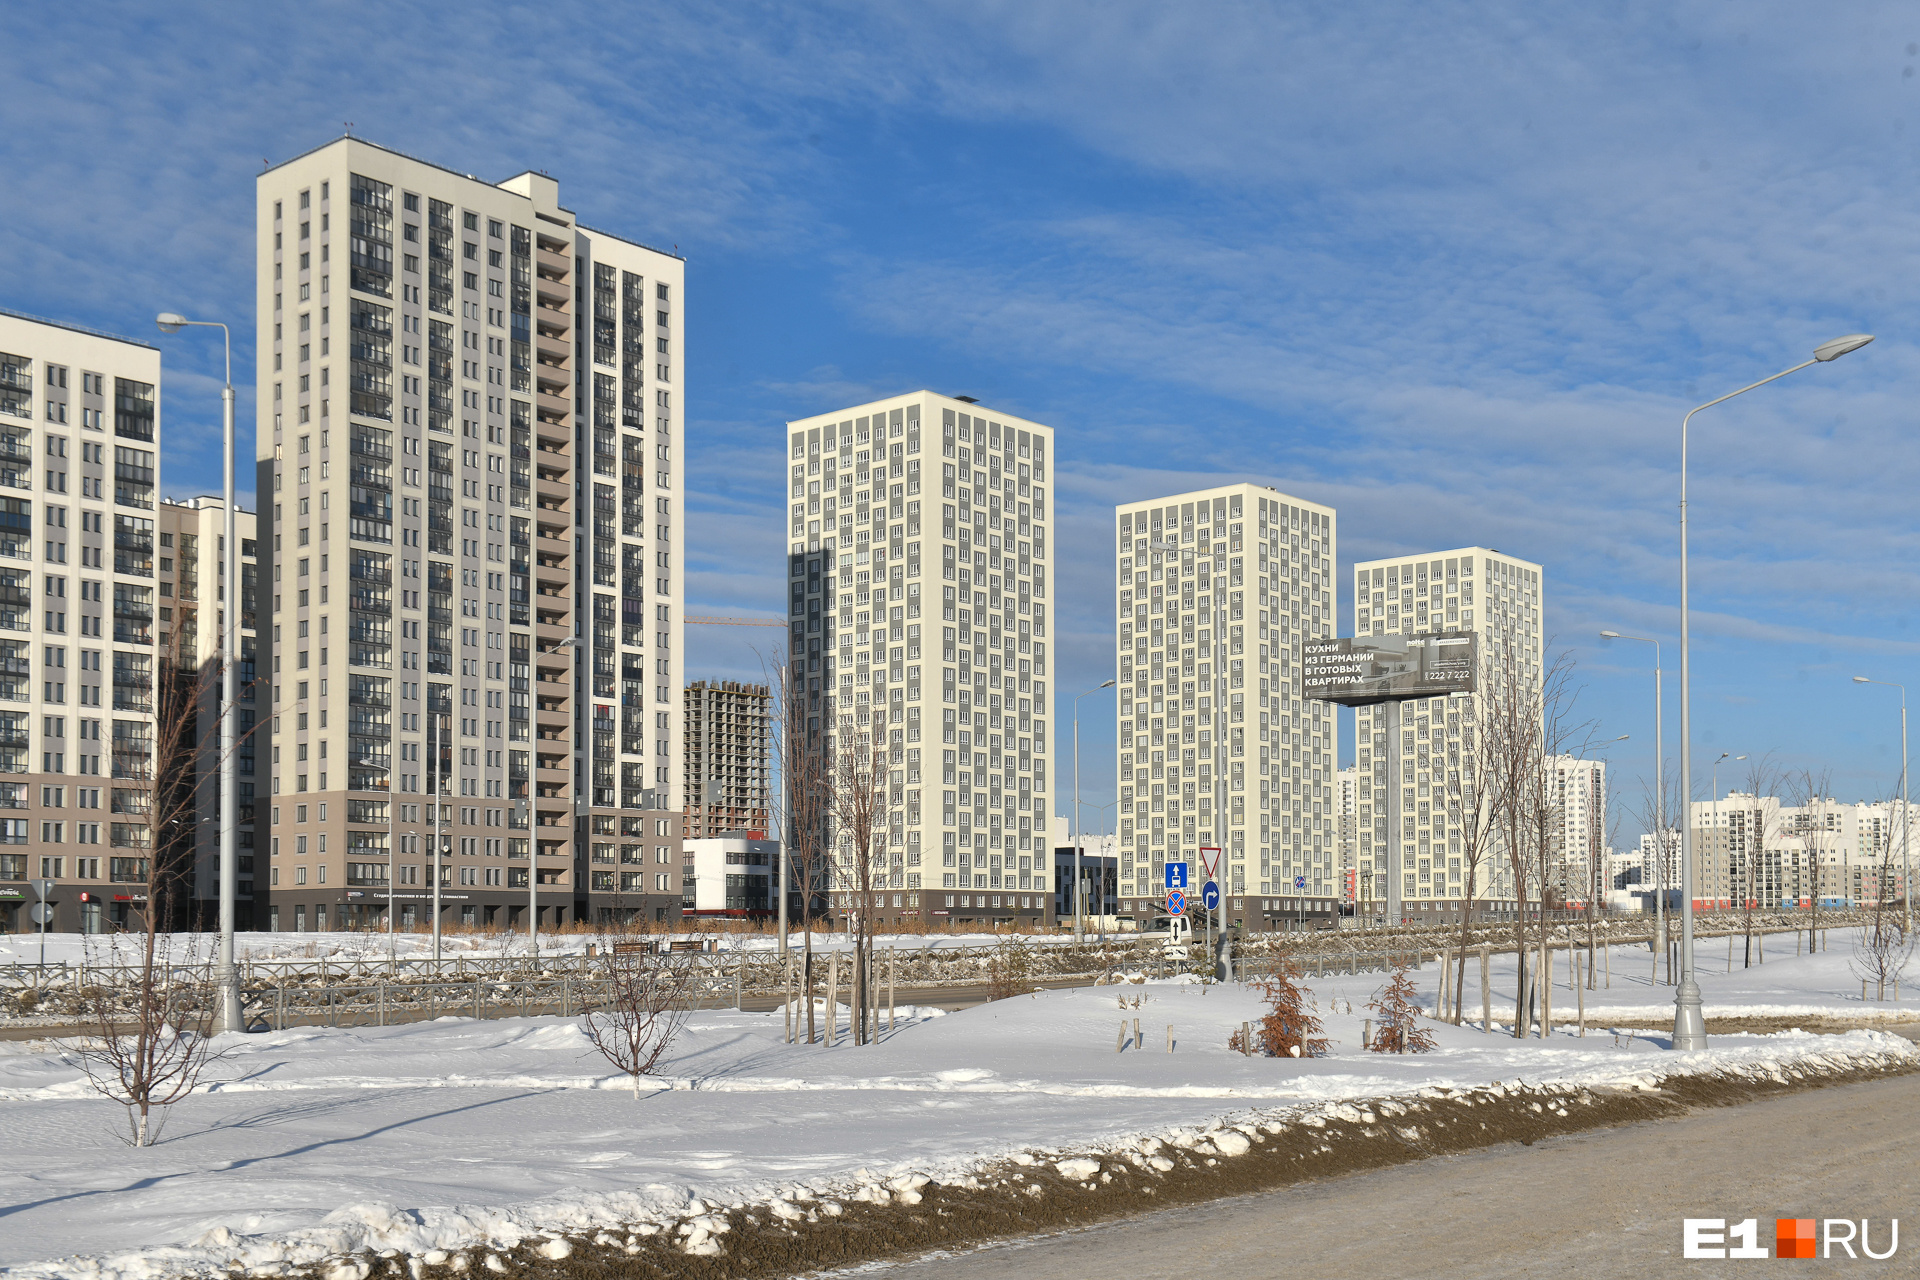 В Екатеринбурге продали в пять раз меньше квартир в новостройках, чем обычно. Объясняем, почему это нормально